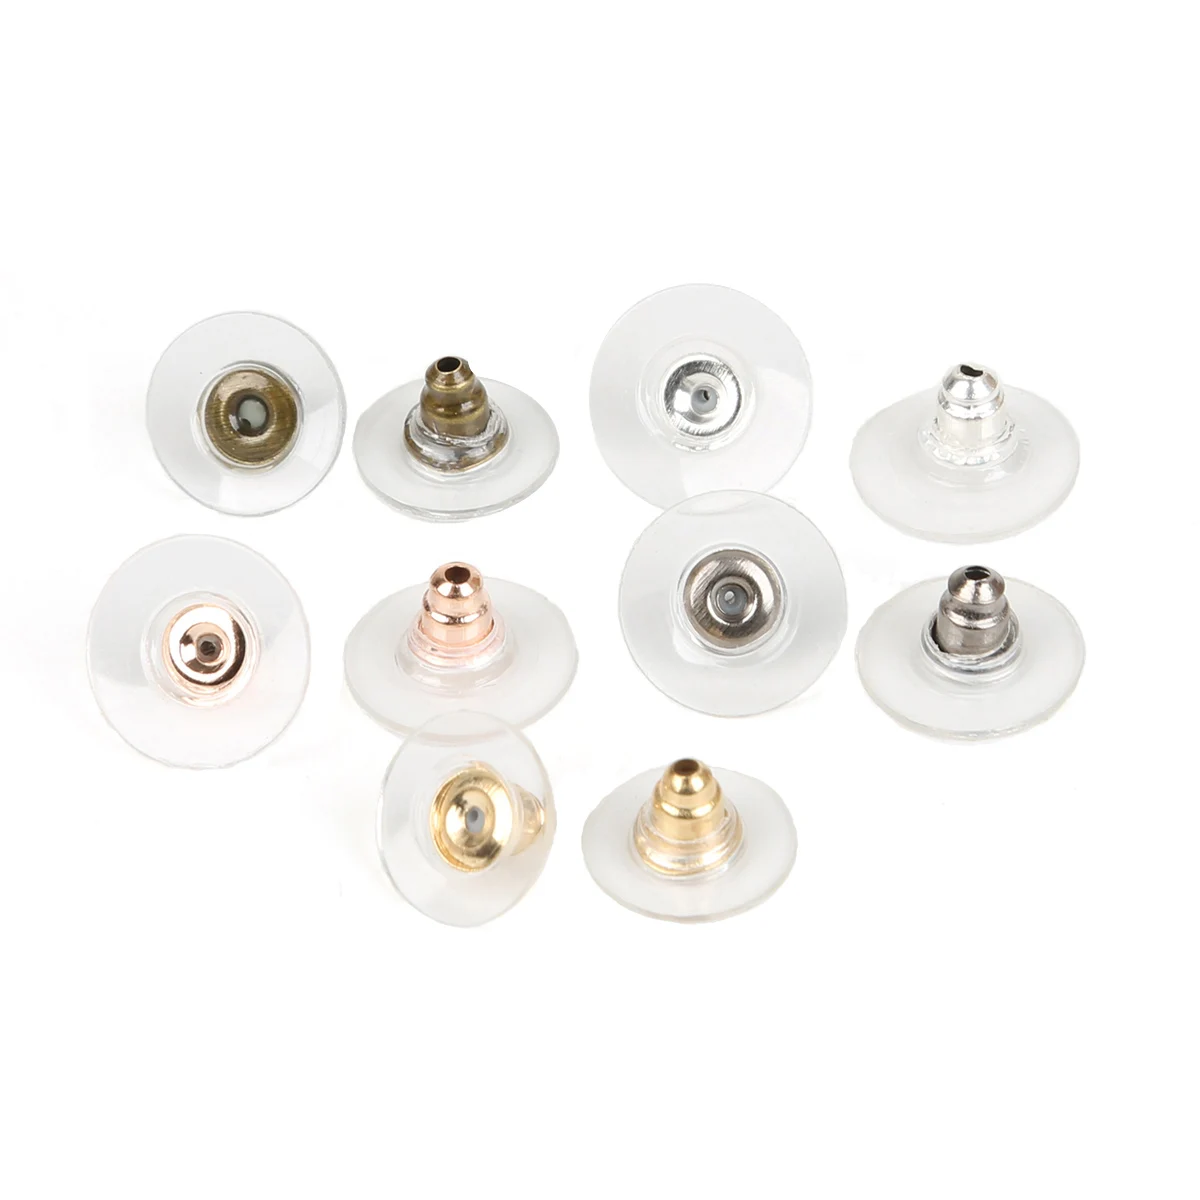 

50pcs/lot 6x11mm Rubber Earring Backs Stopper Earnuts Stud Earring Back Supplies Jewelry DIY Jewelry Findings Making Accessories